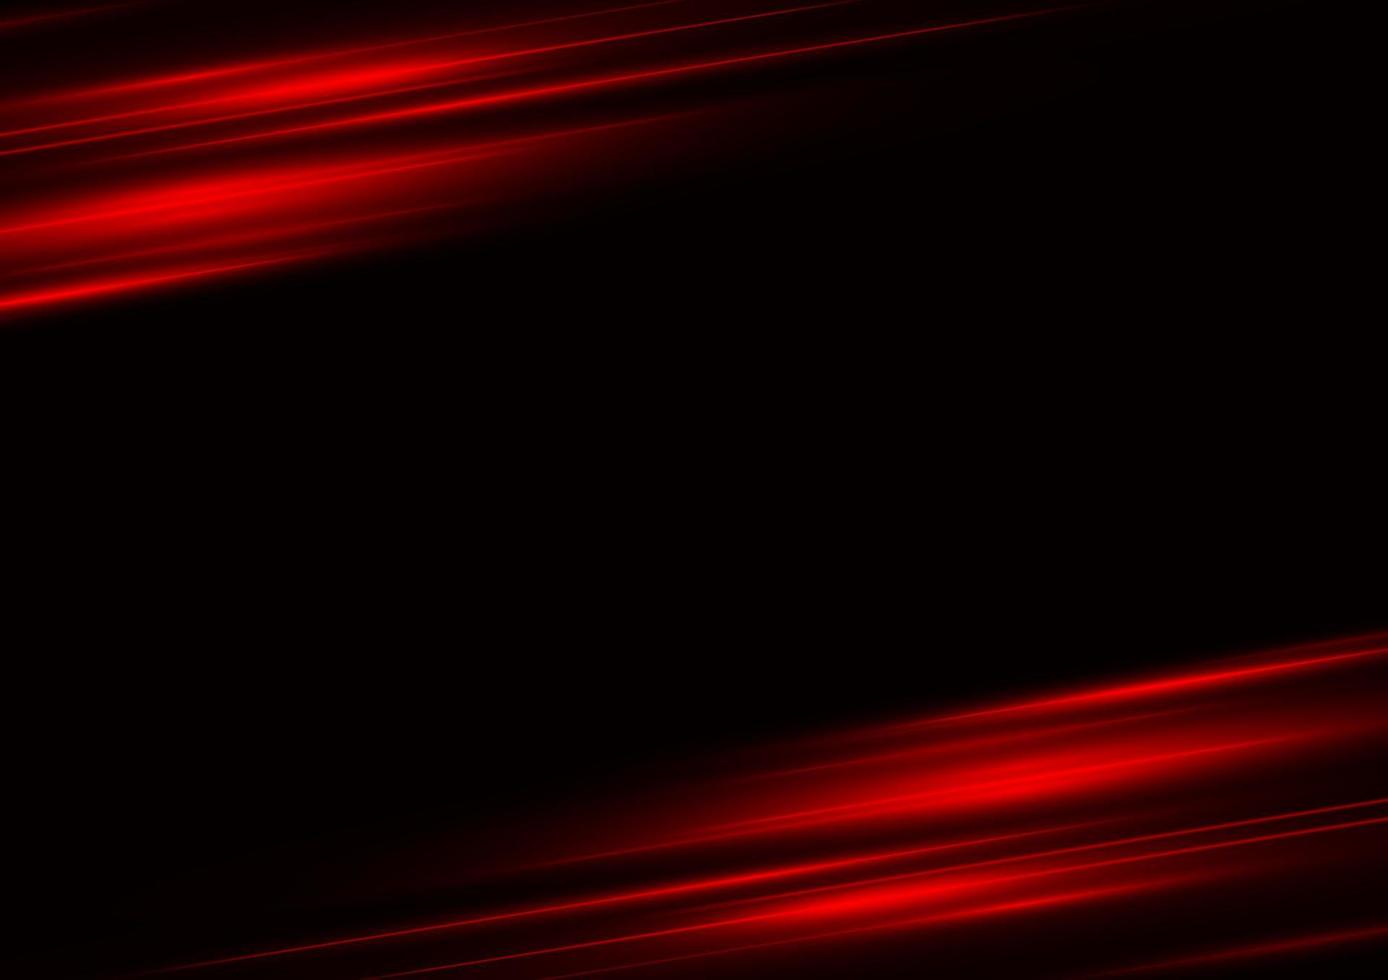 abstrakt röd hastighet neonljuseffekt på svart bakgrund vektorillustration. vektor